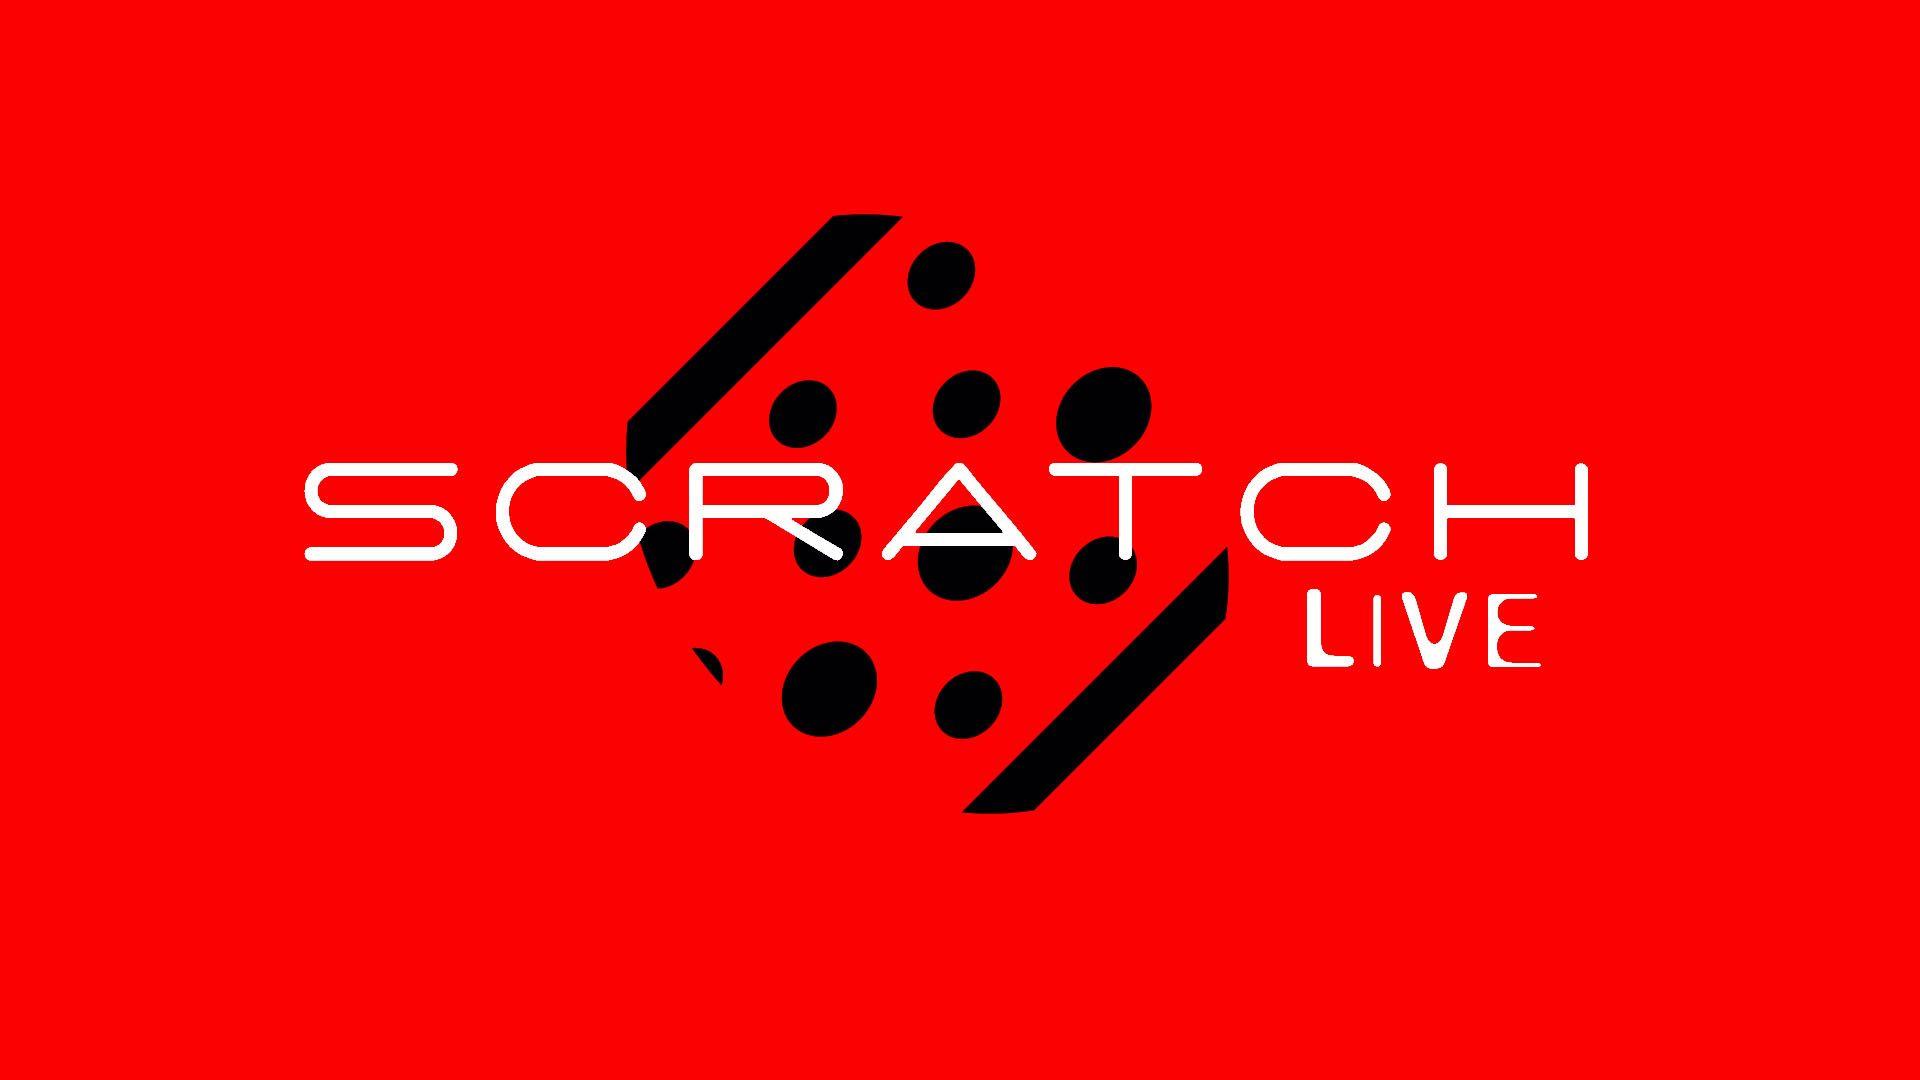 Serato Scratch Live Wallpaper & Desktop Pics